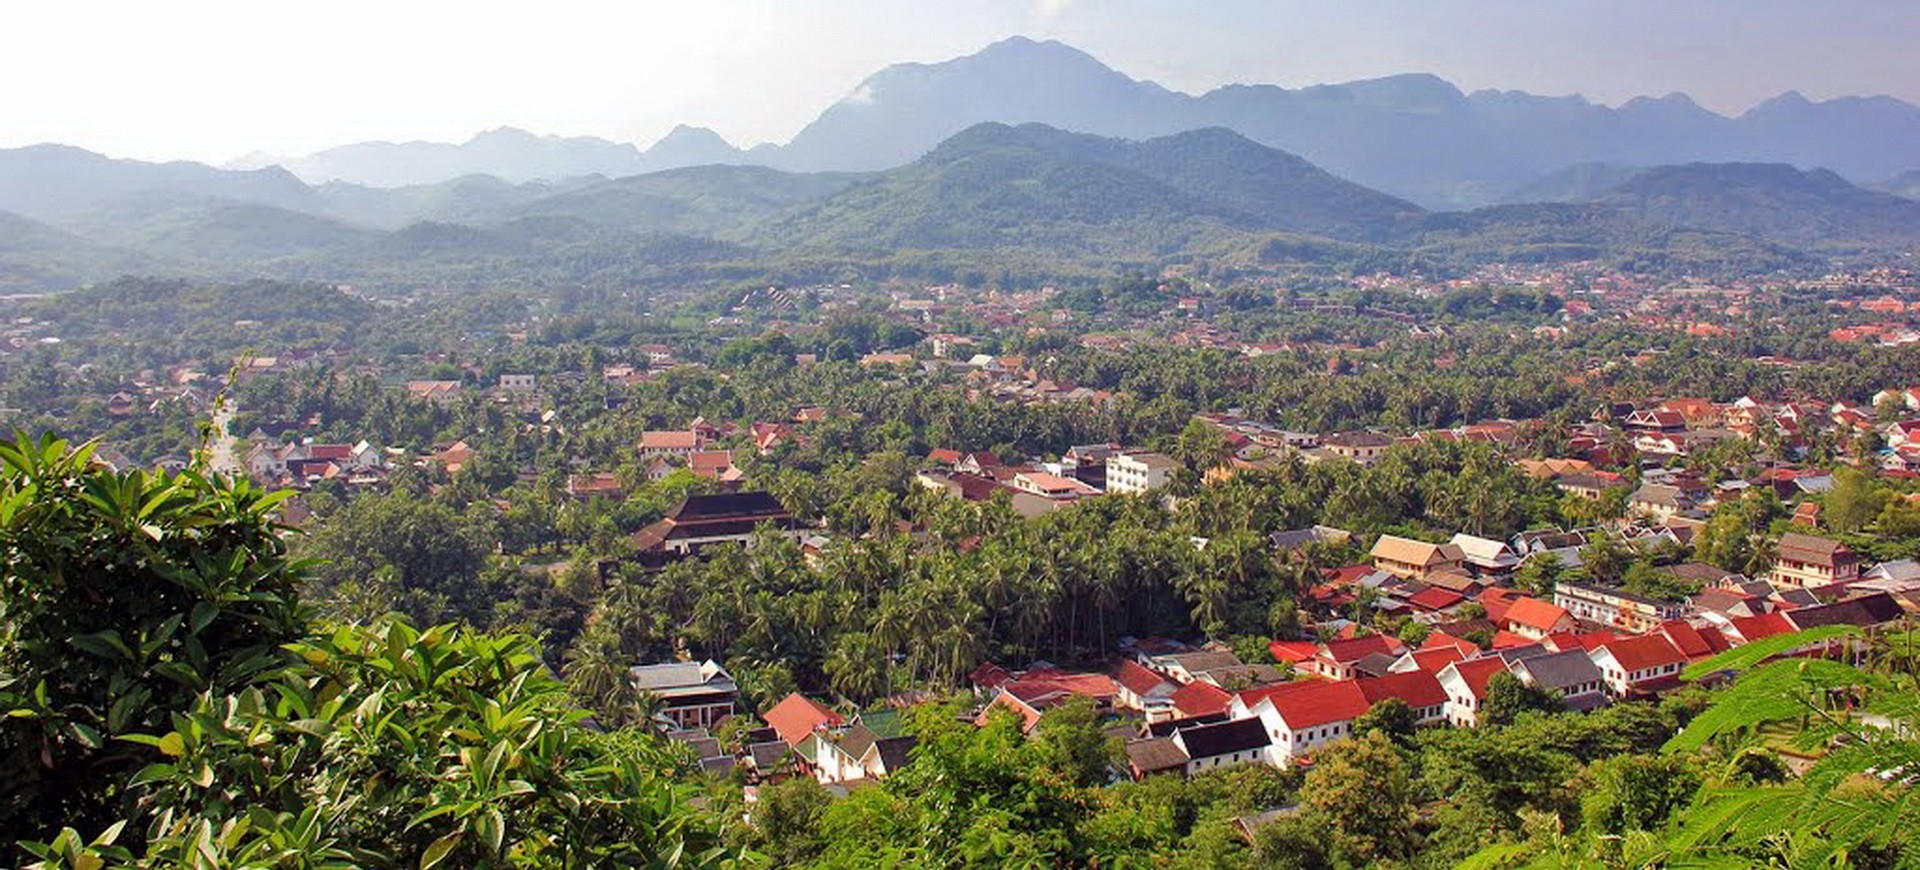 Luang Prabang Phousi vue panoramique au Laos